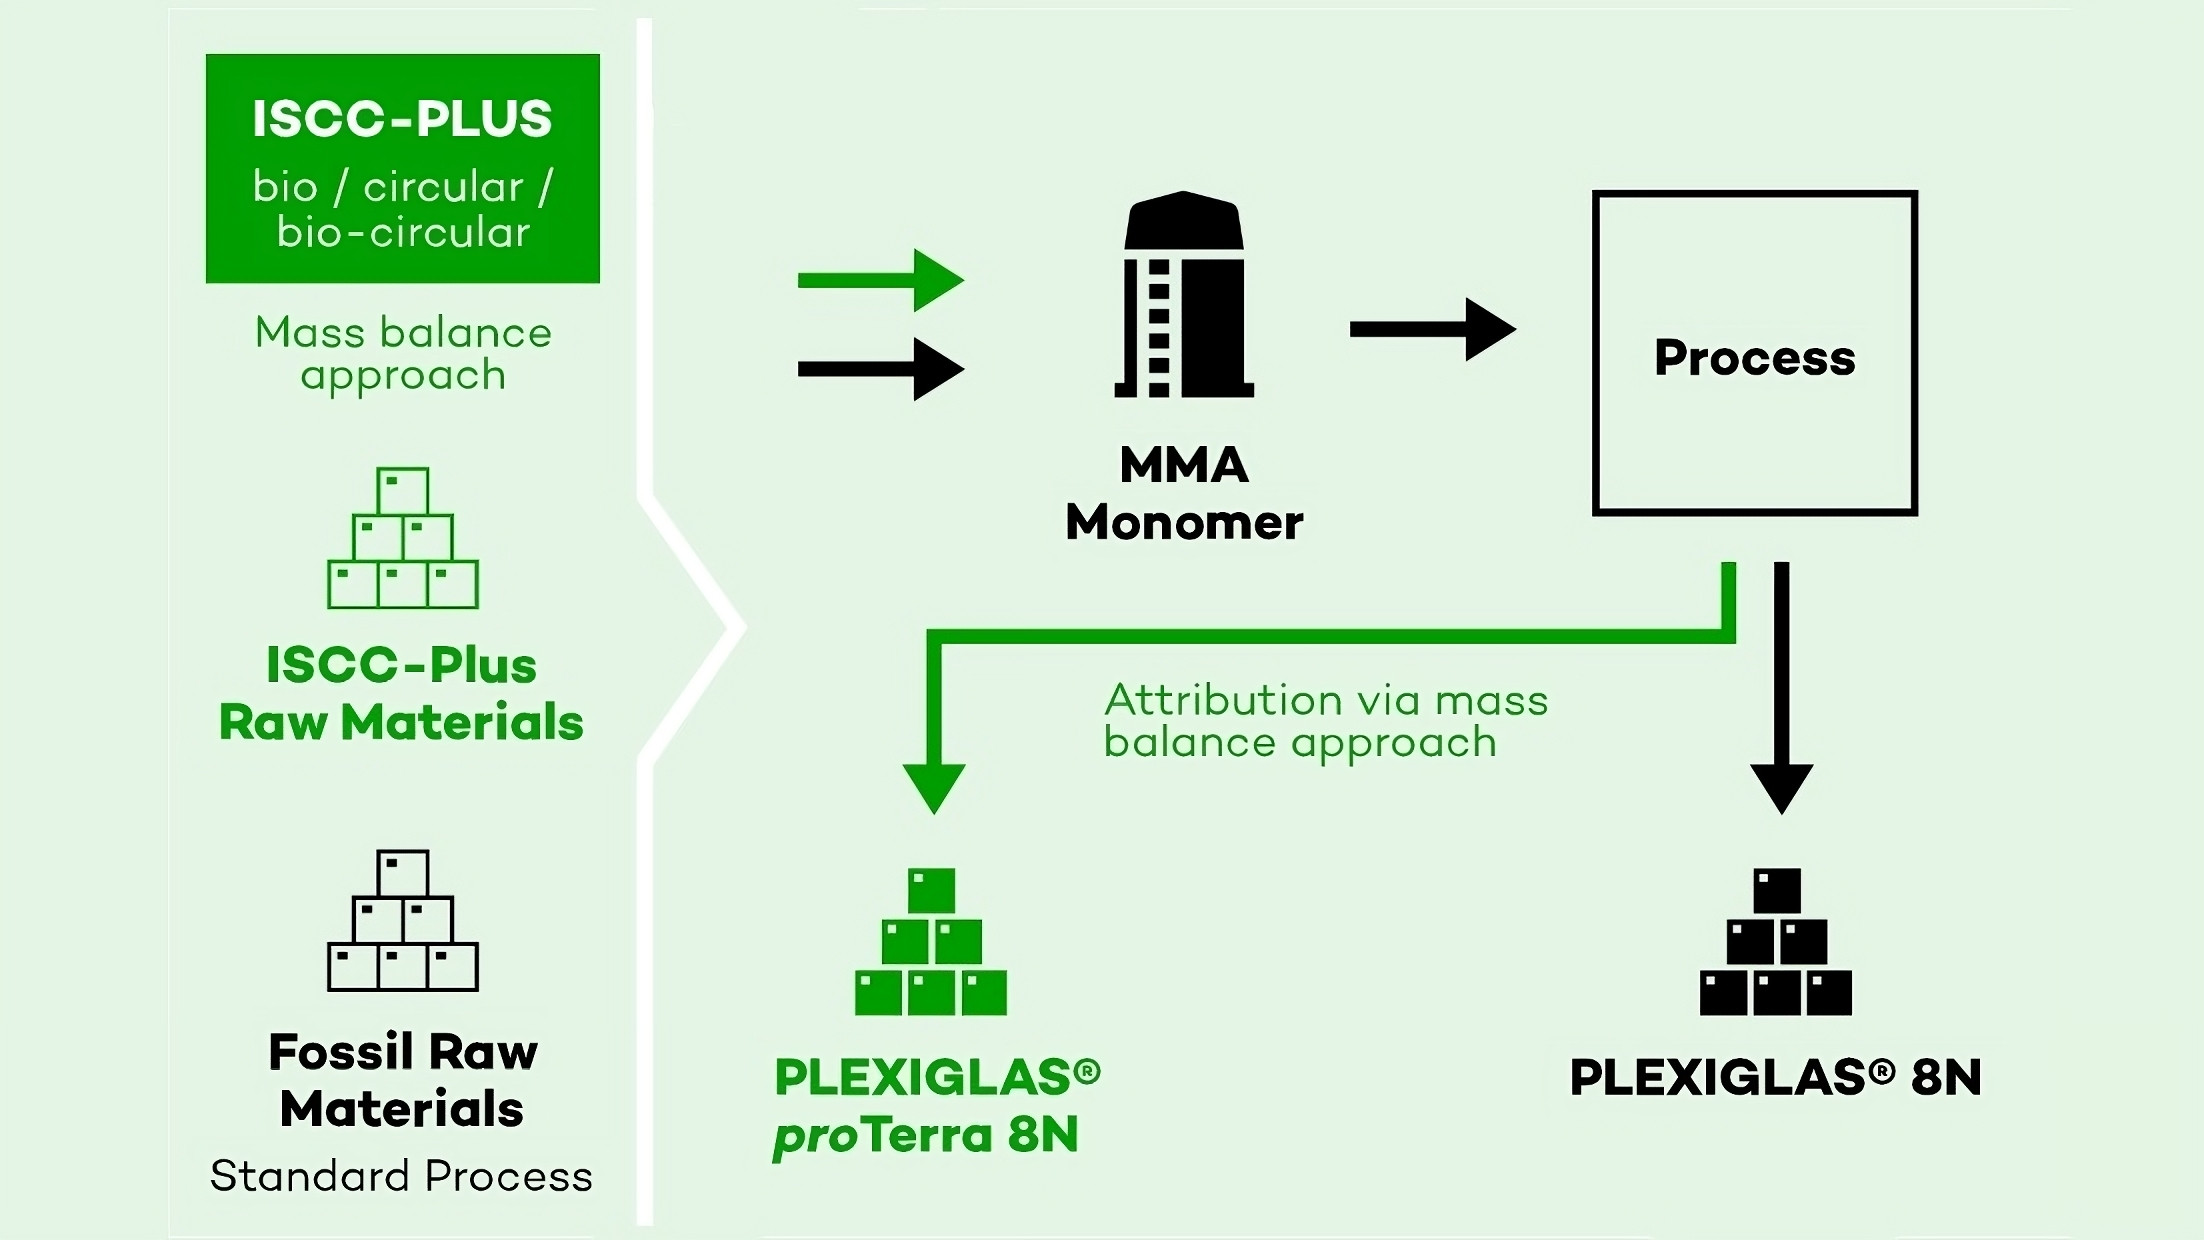 Plexiglas pro Terra 8N ist ein grüner Zwilling von Plexiglas 8N bei identischen Produkteigenschaften. Er ermöglicht Kunden den Wechsel auf ein Material mit reduziertem CO